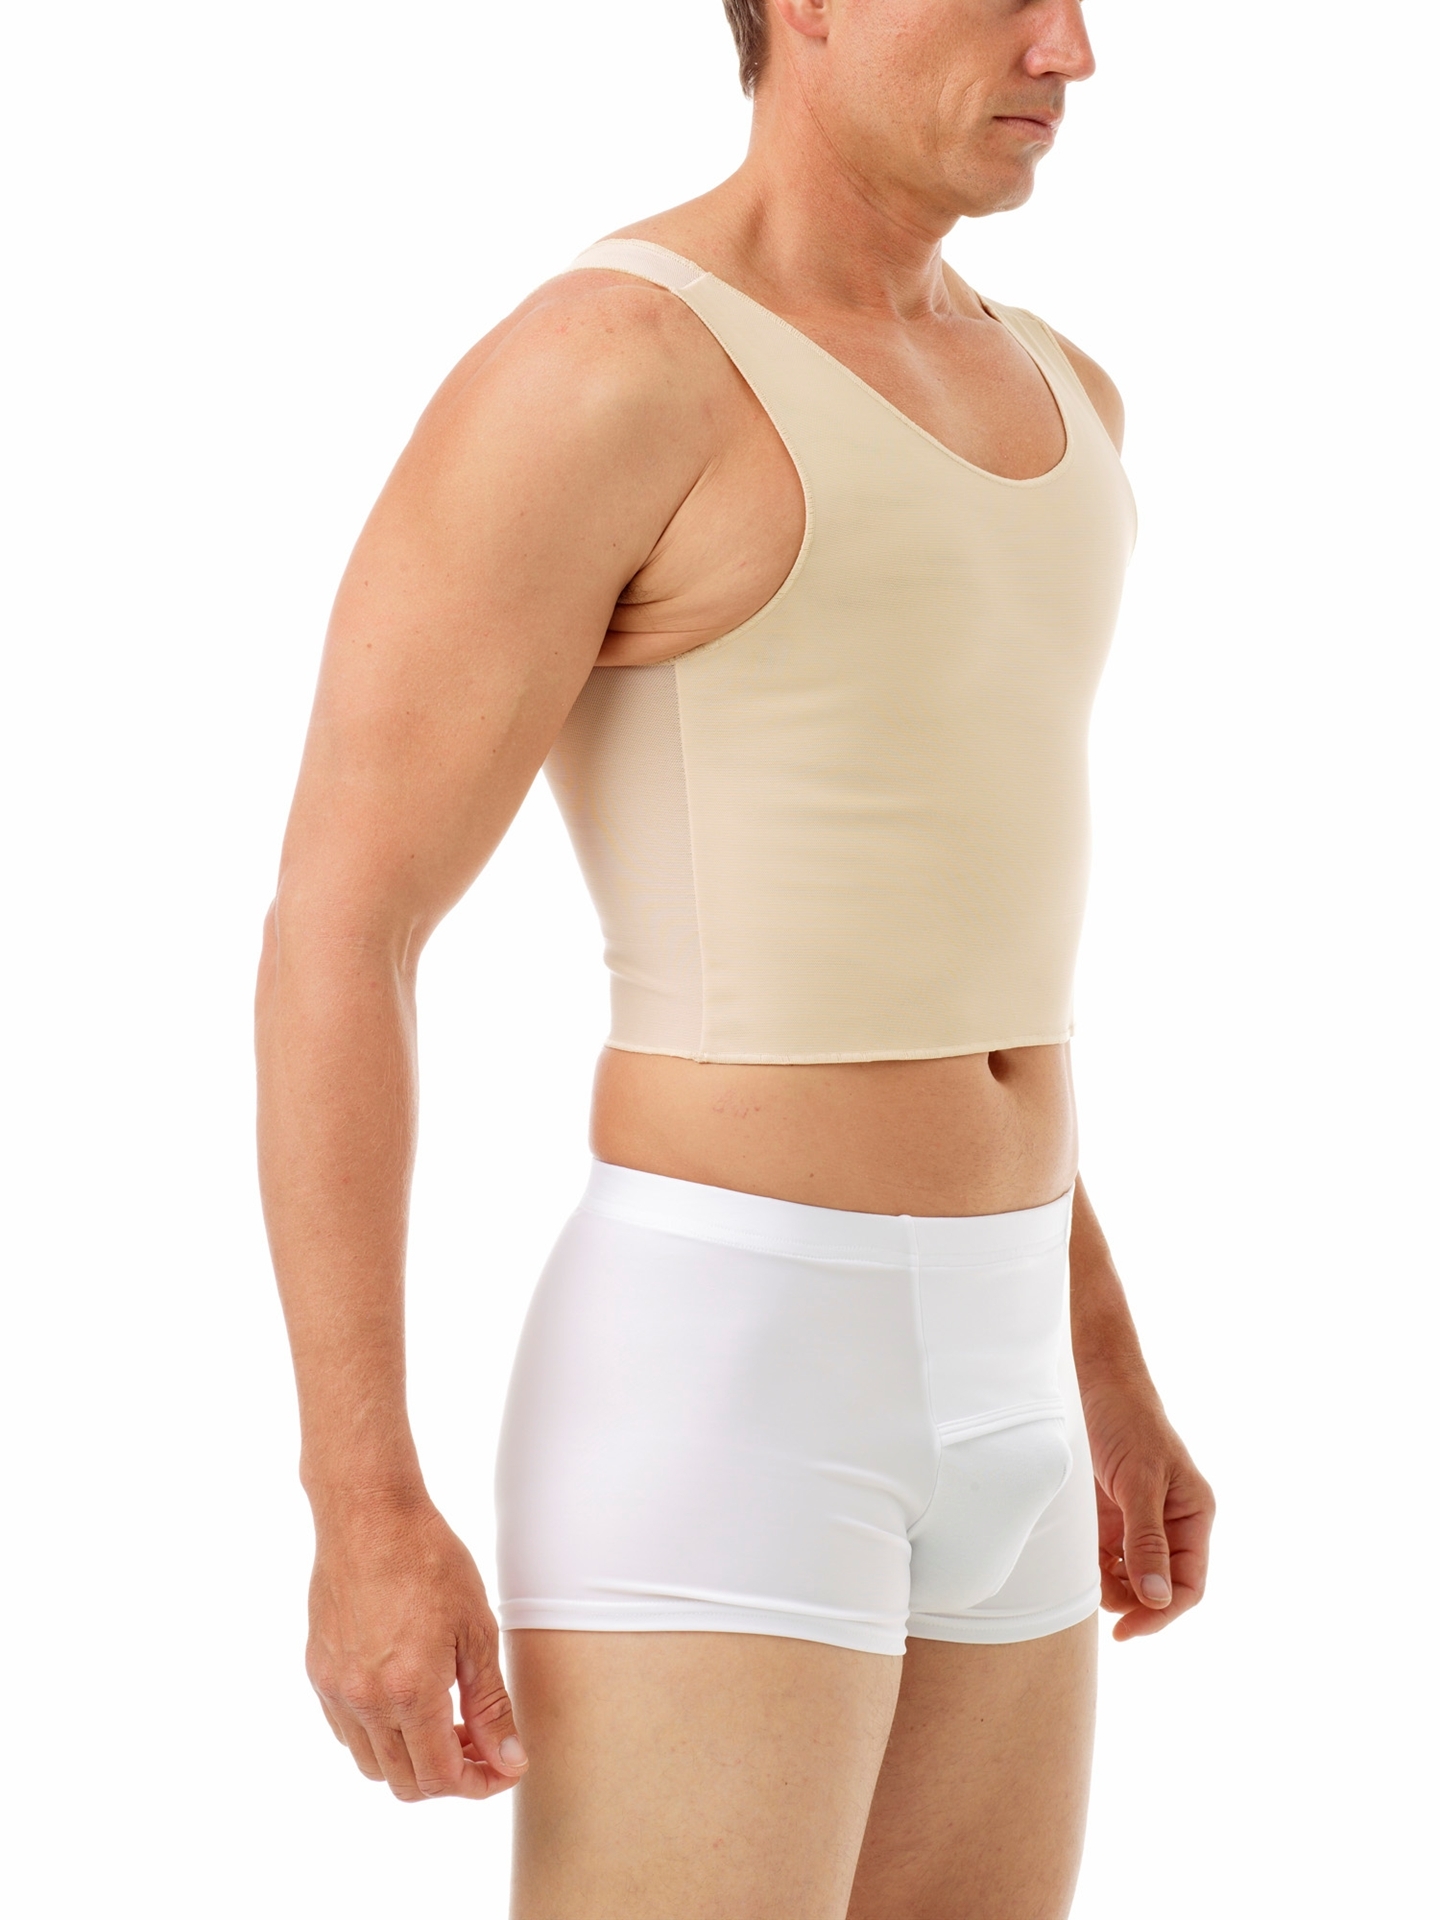 uk-best-male-gynecomastia-chest-binder-for-man-boobs-mens-stomach-tummy-shaper-herren-41-66